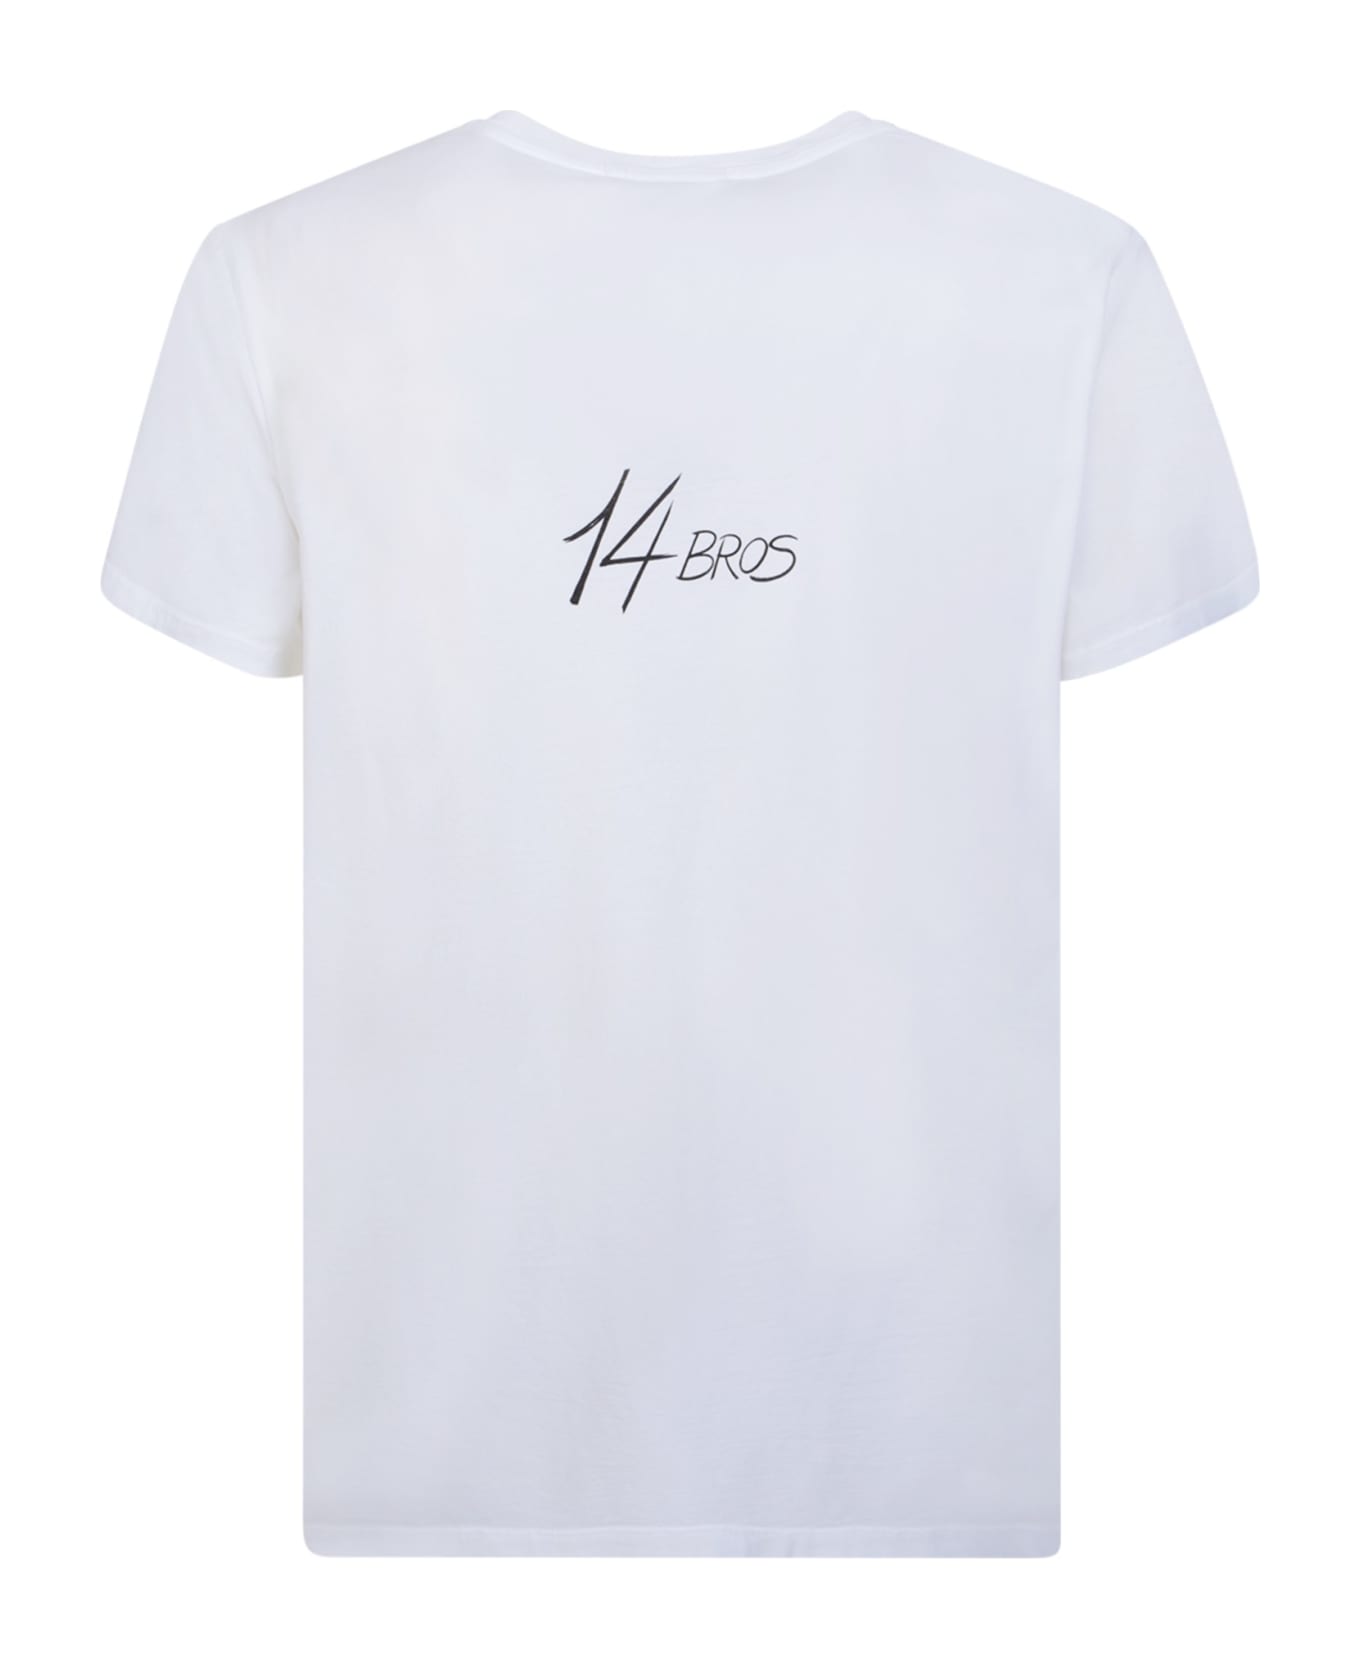 14 Bros Logo White T-shirt - White